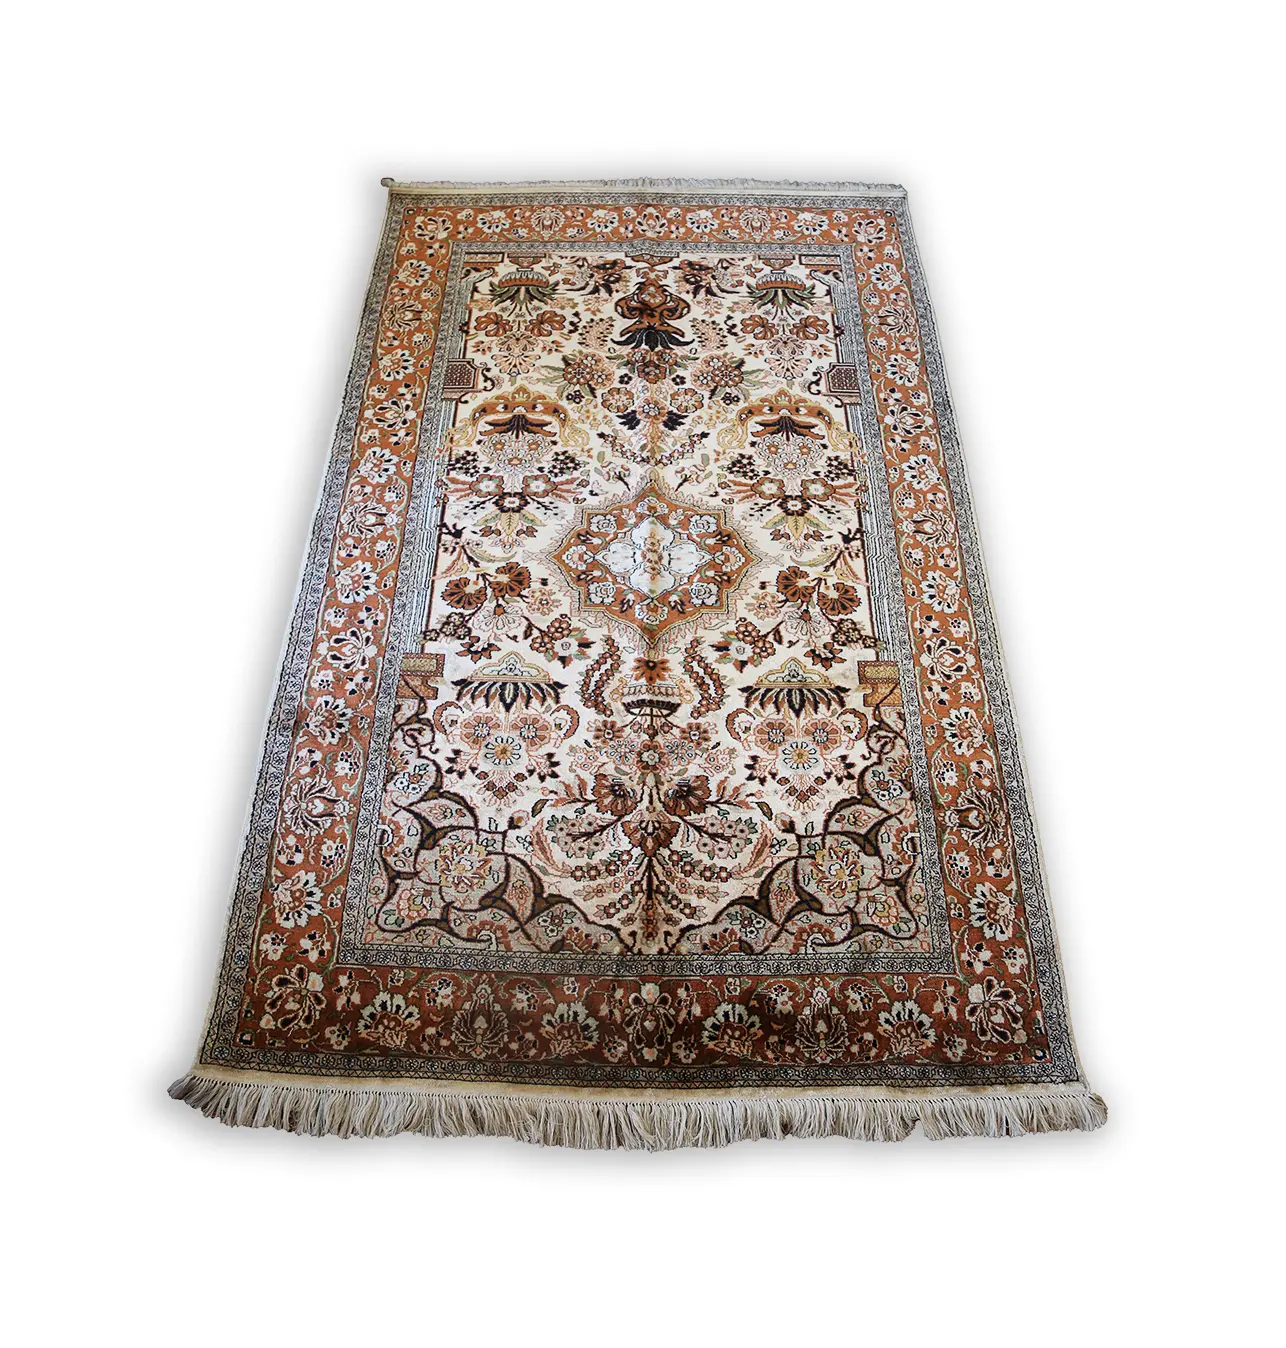 Tappeto etnico personalizzato fatto a mano in stile tradizionale/tappeto e tappeti per pavimenti orientali dell'uzbekistan per la decorazione domestica